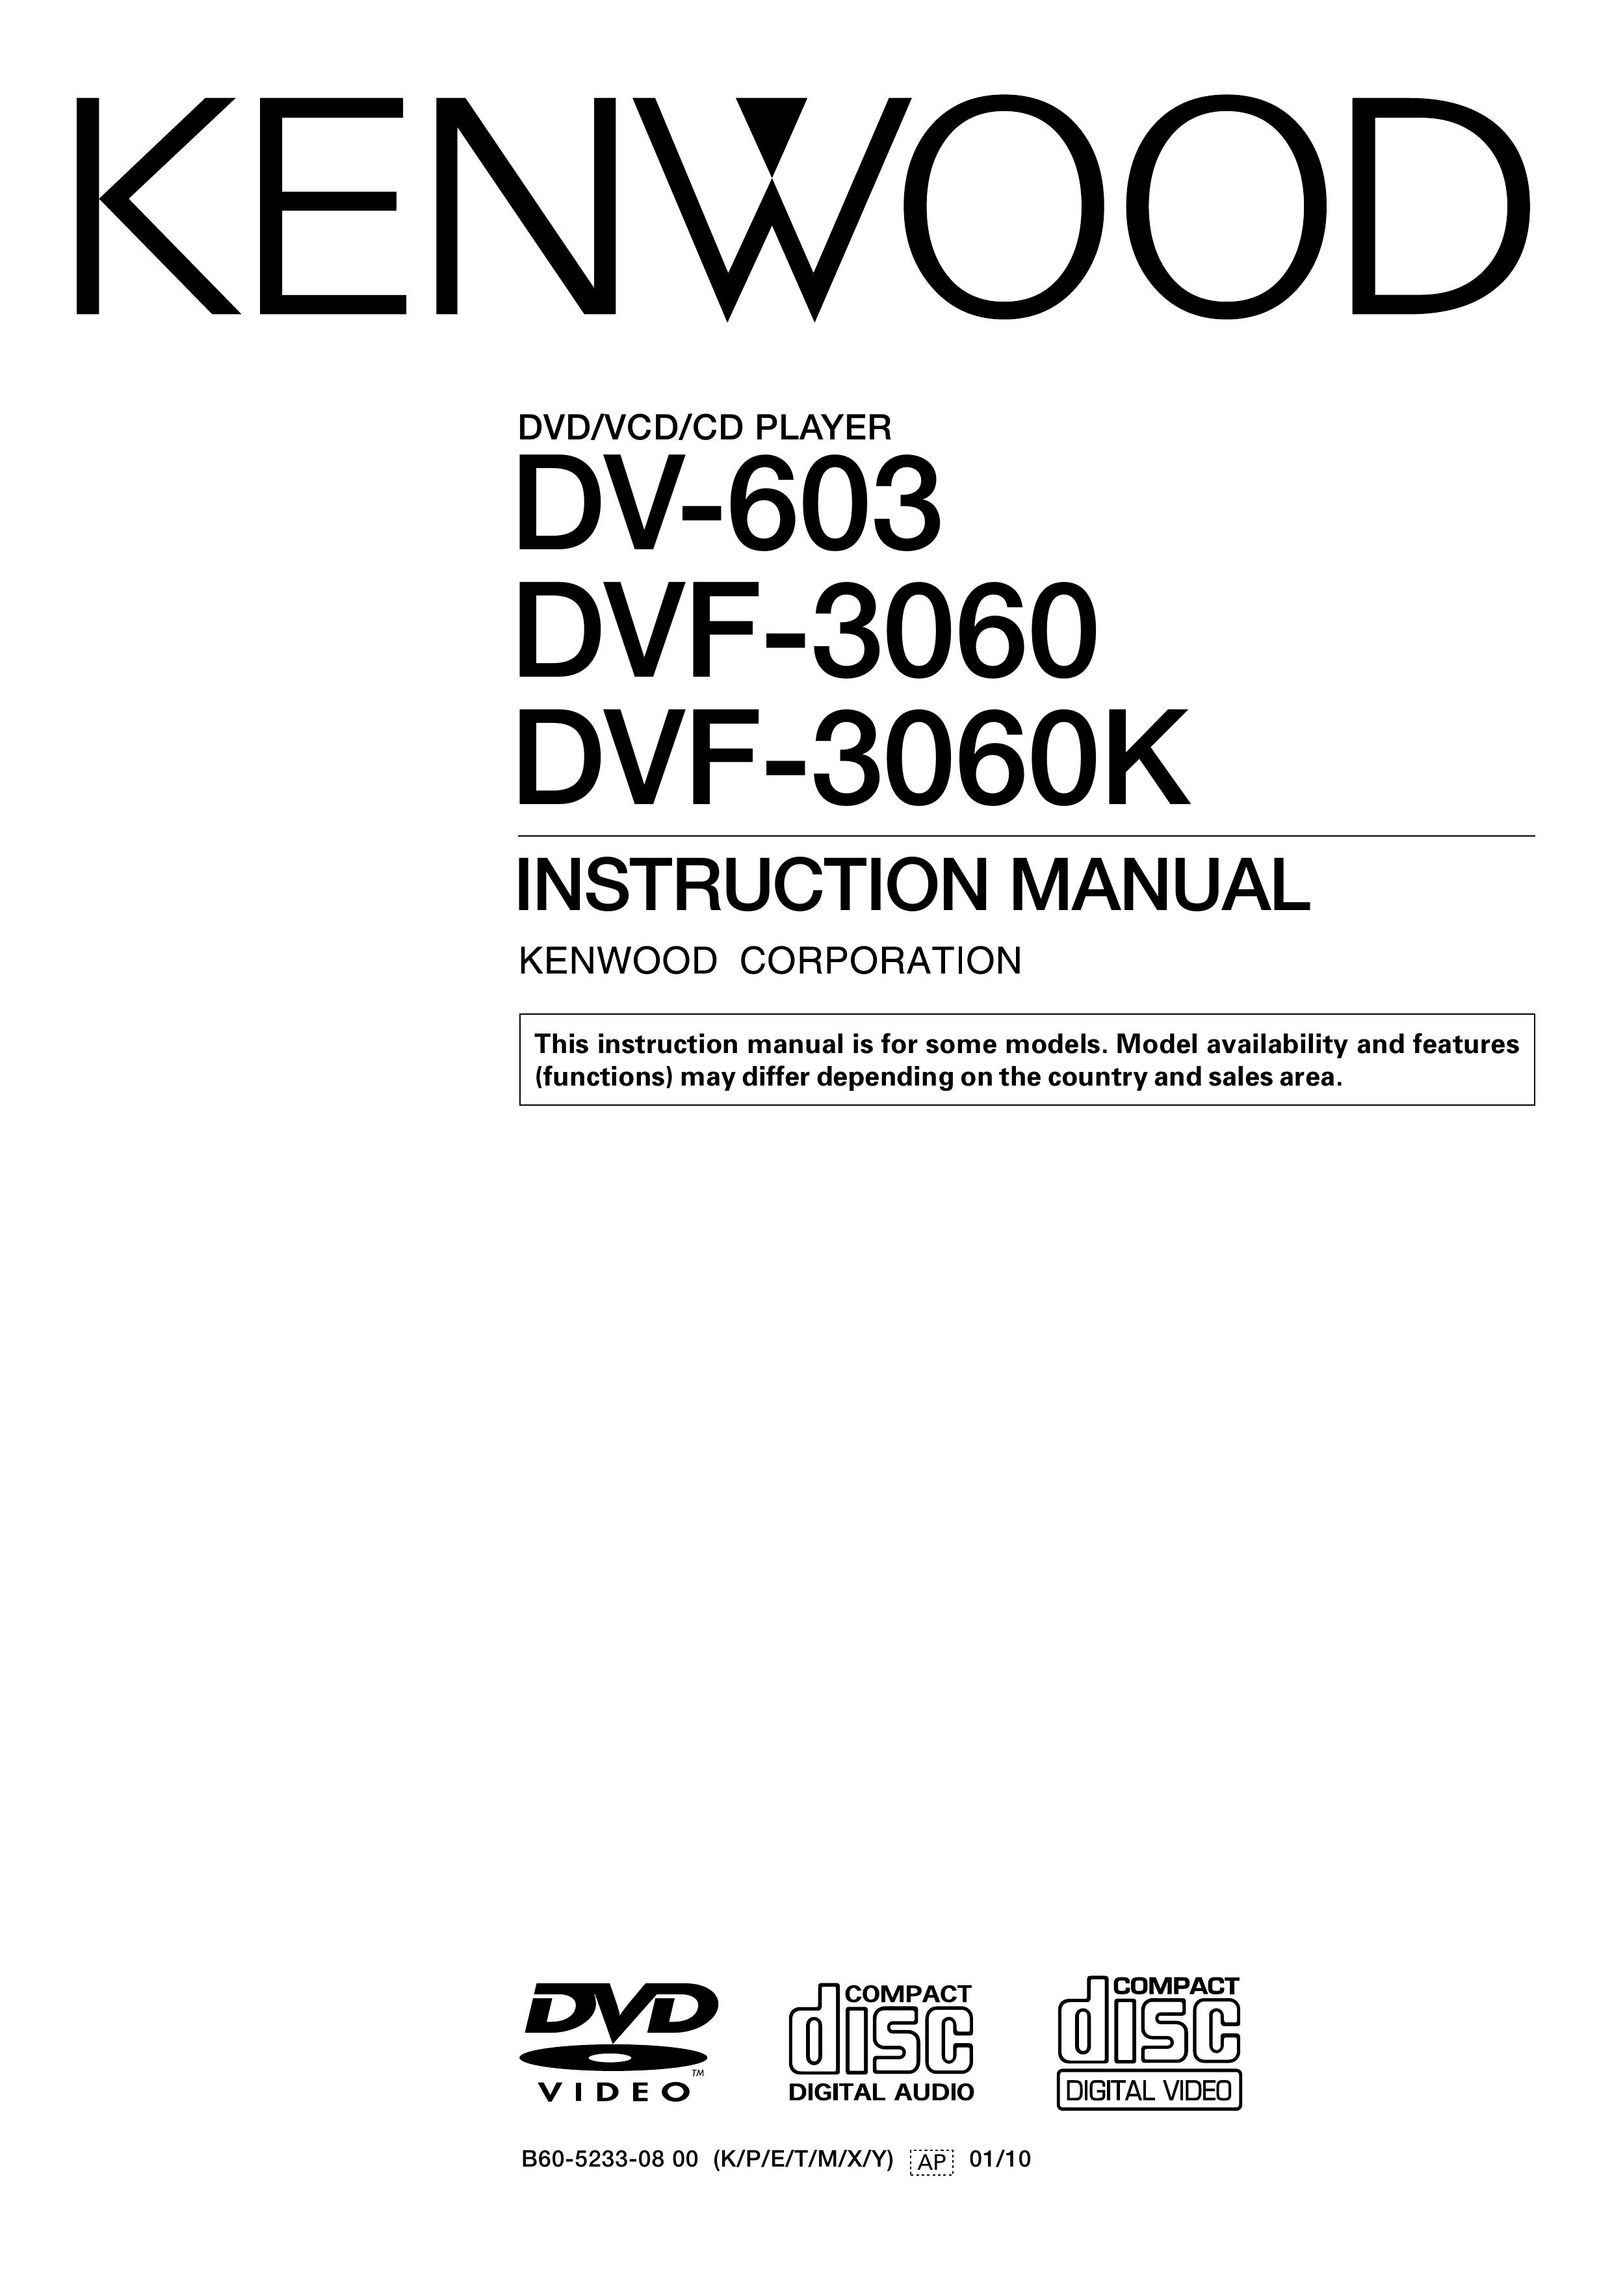 Kenwood DVF-3060 DVD Player User Manual